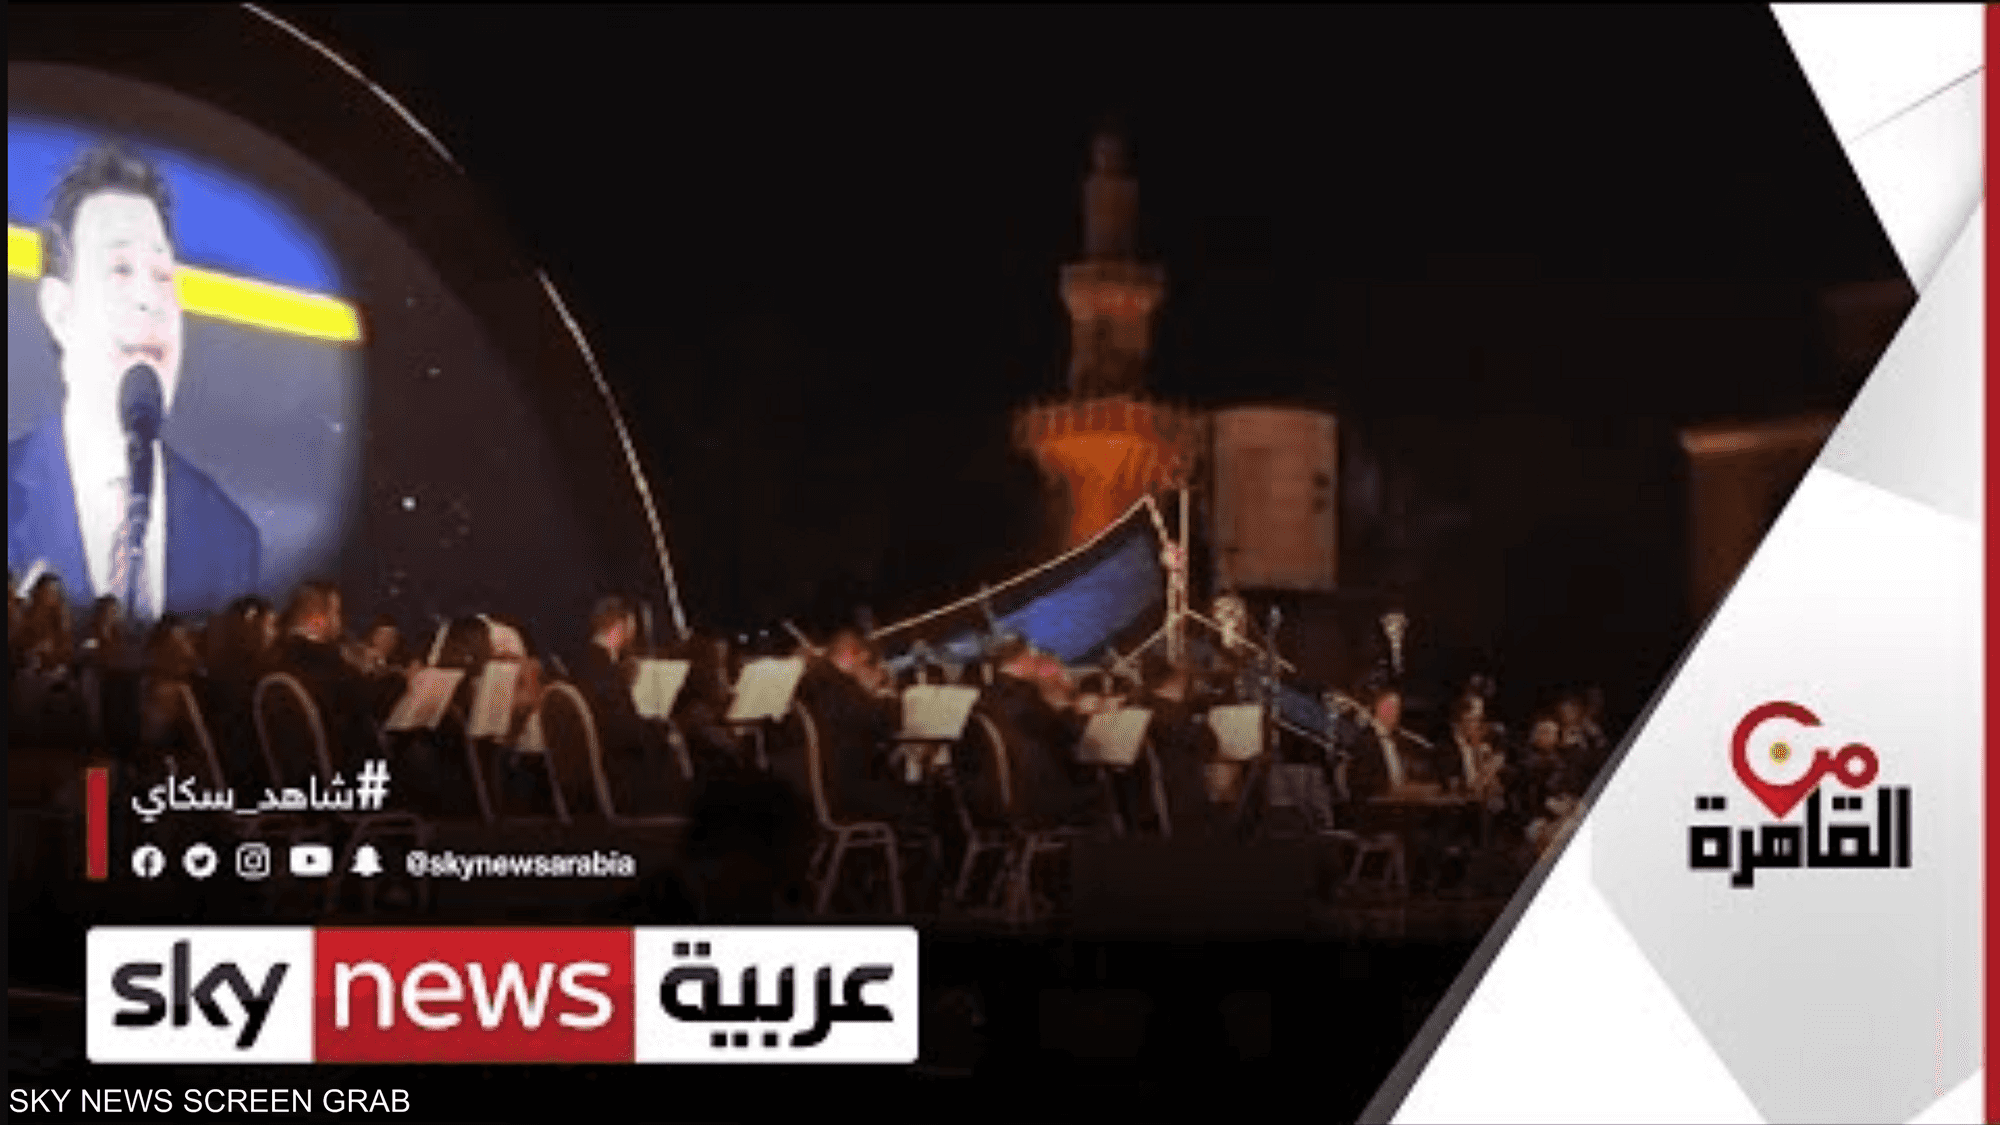 مشاركة واسعة في مهرجان الموسيقى العربية 2020